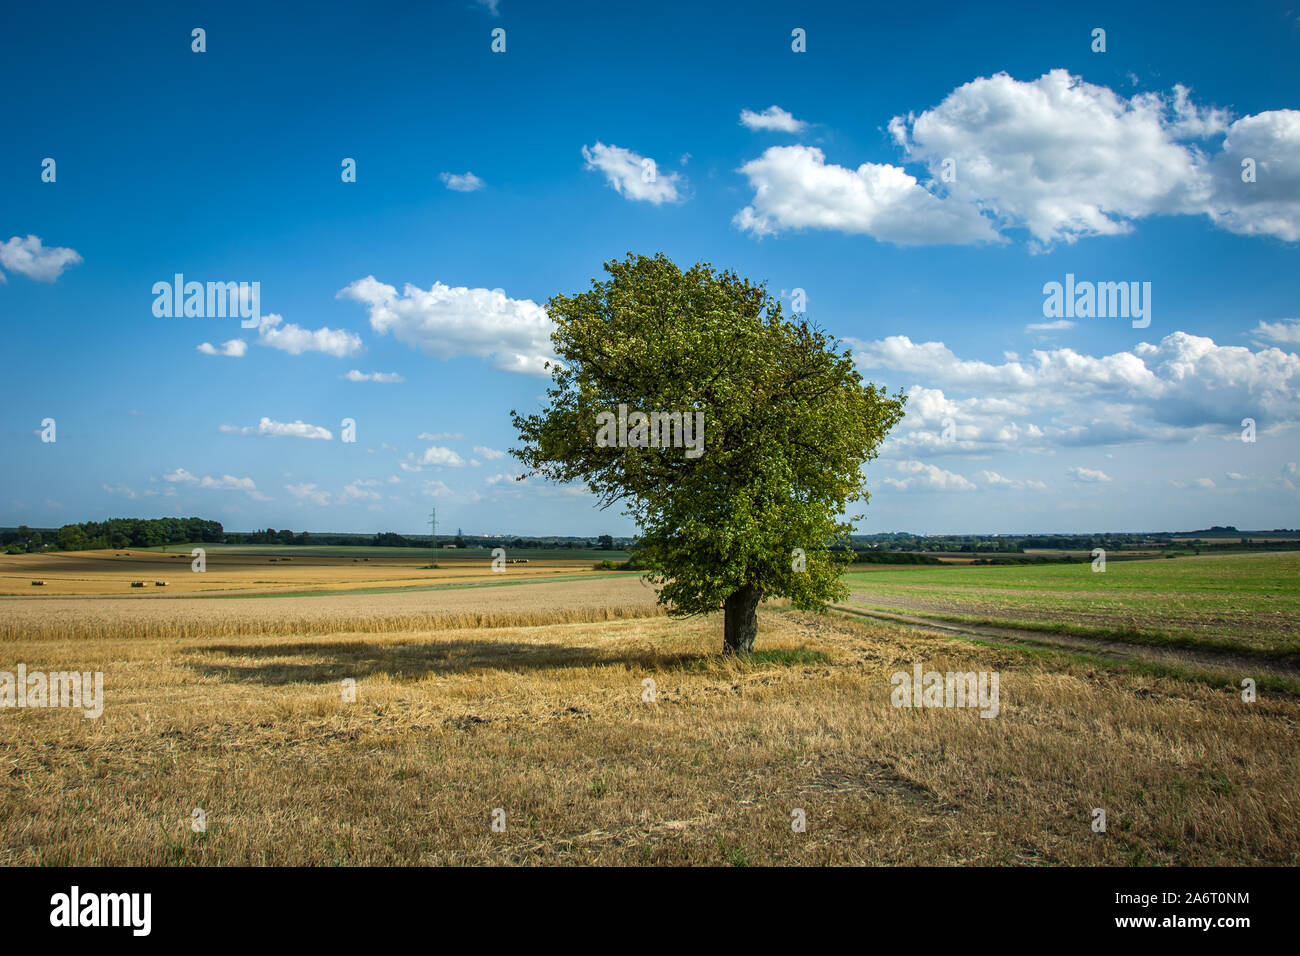 Großer, Grüner Baum in einem Feld, Wolken und blauer Himmel Stockfoto